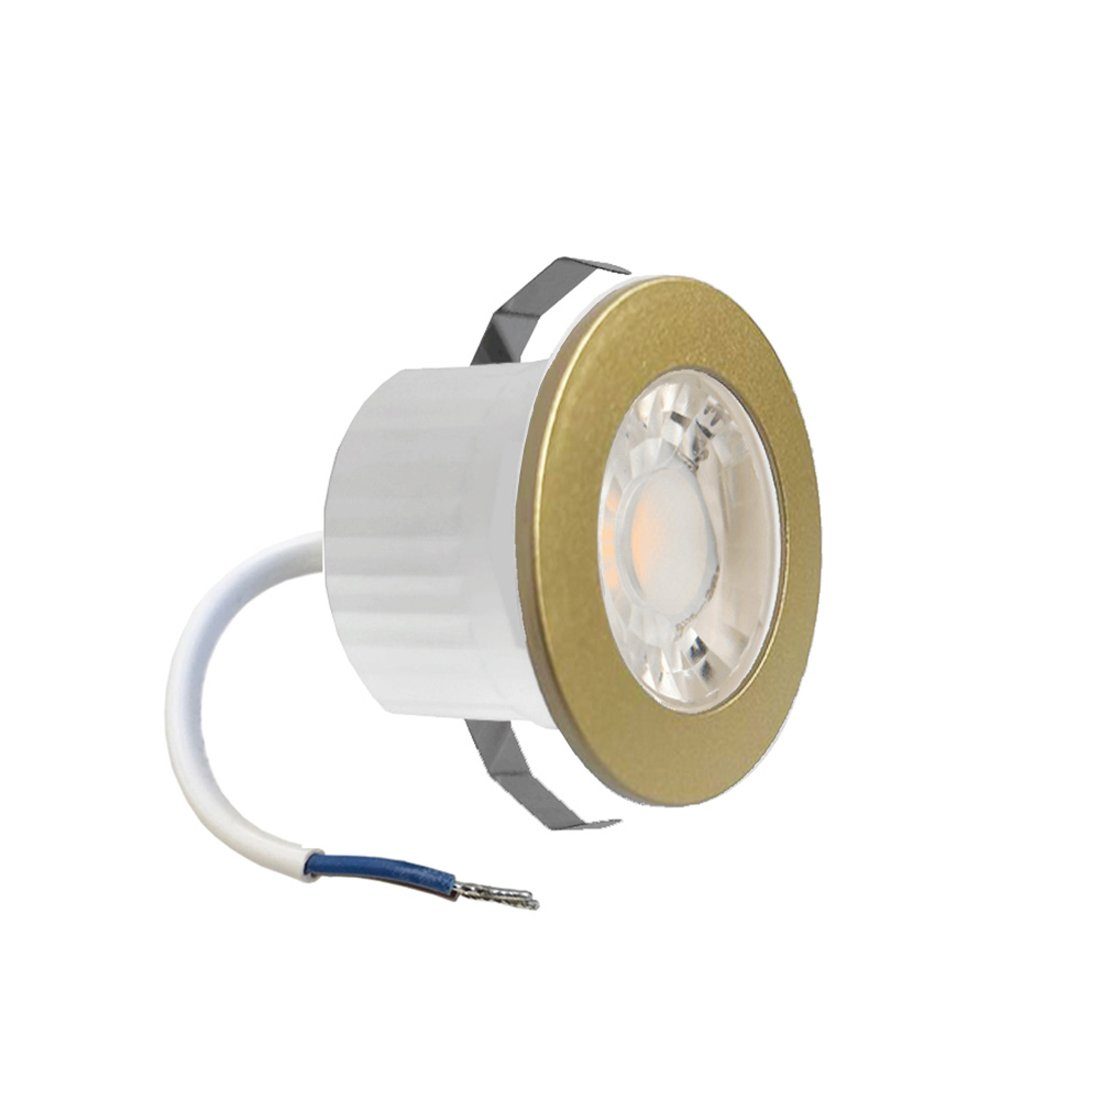 Braytron LED Einbaustrahler 3 Watt LED mini Einbauleuchte Einbaustrahler Spot Gold Neutralweiß, Einbauspot Rahmenfarbe Gold für innen und außen IP54 Neutralweiß